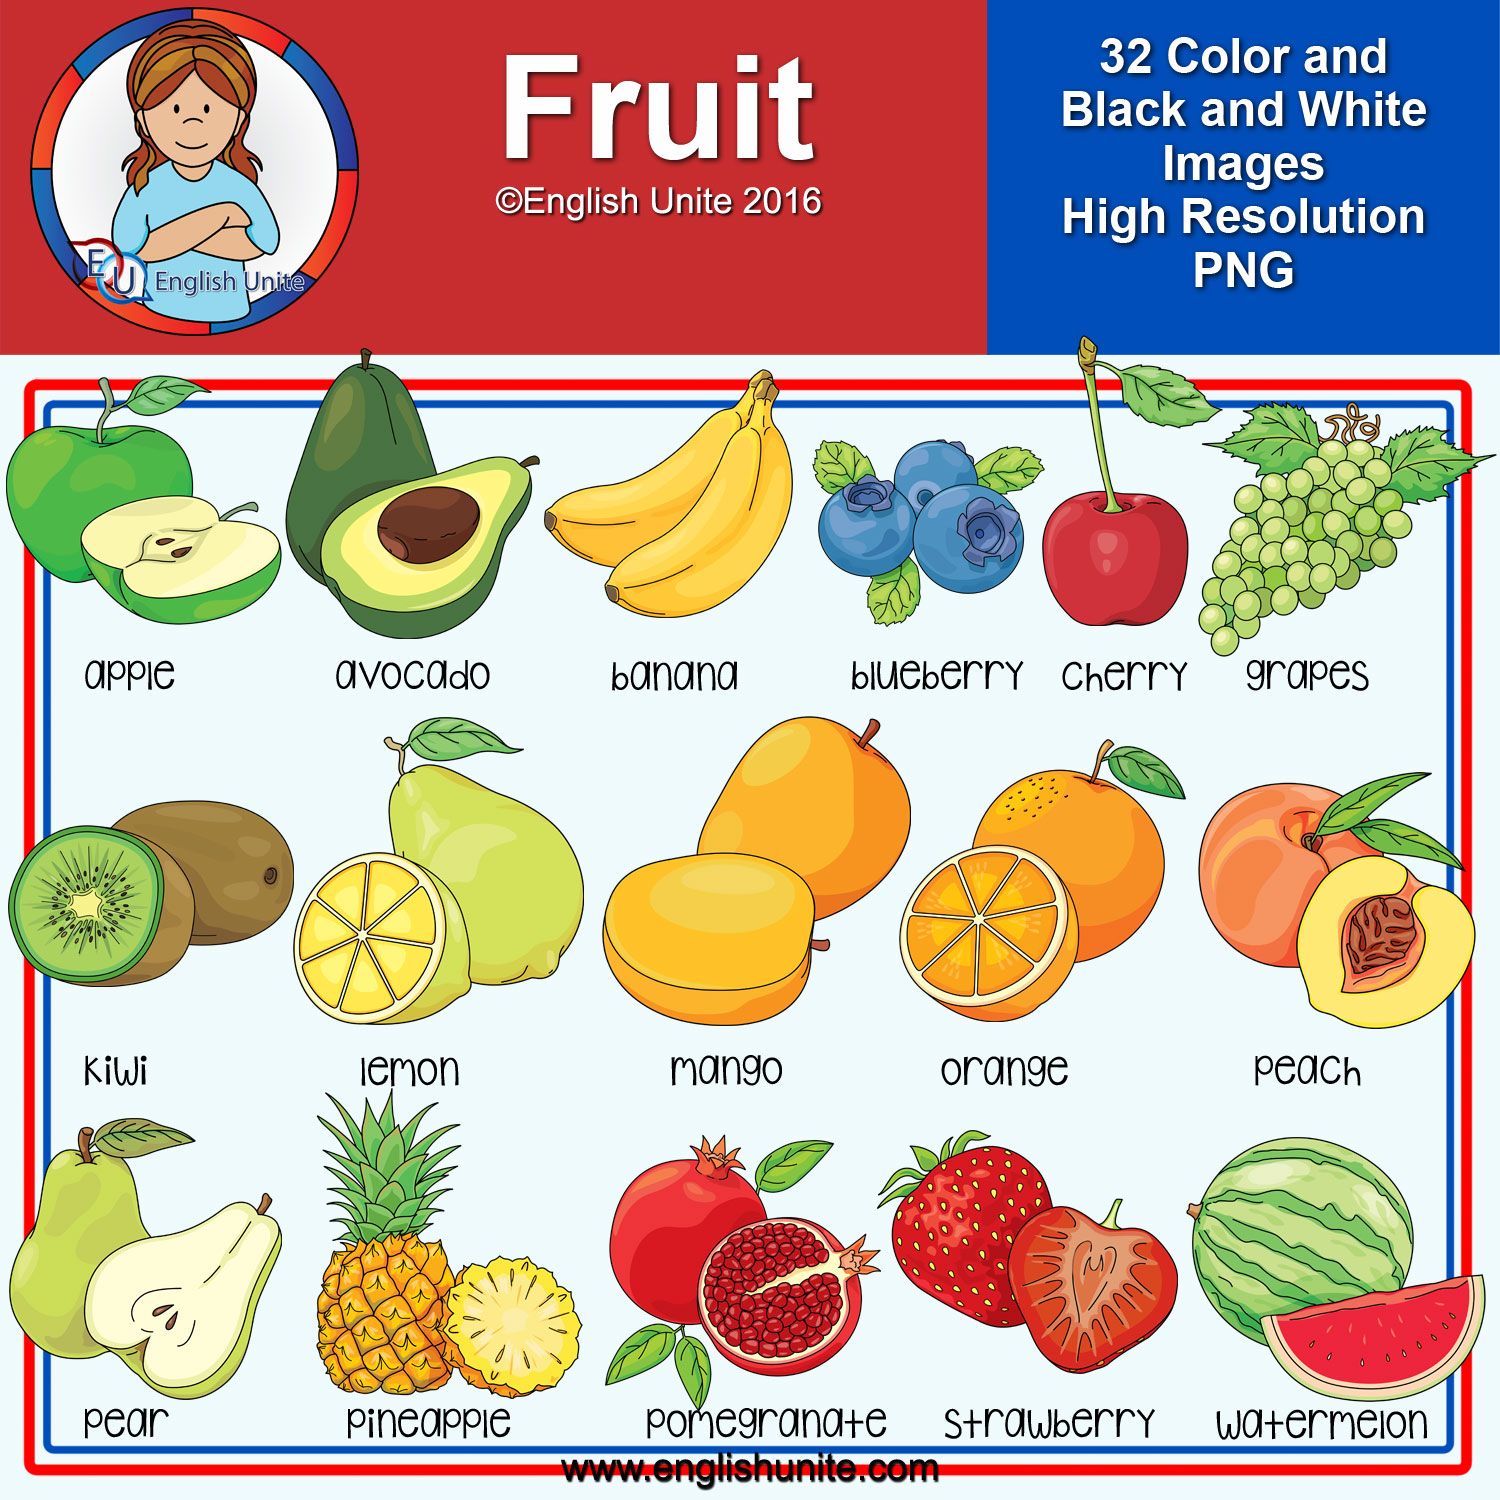 Есть фрукты на английском. Фрукты по английскому для детей. Фрукты на англ. Фрукты на англ для детей. Aaherns на английском lkz ltnb.